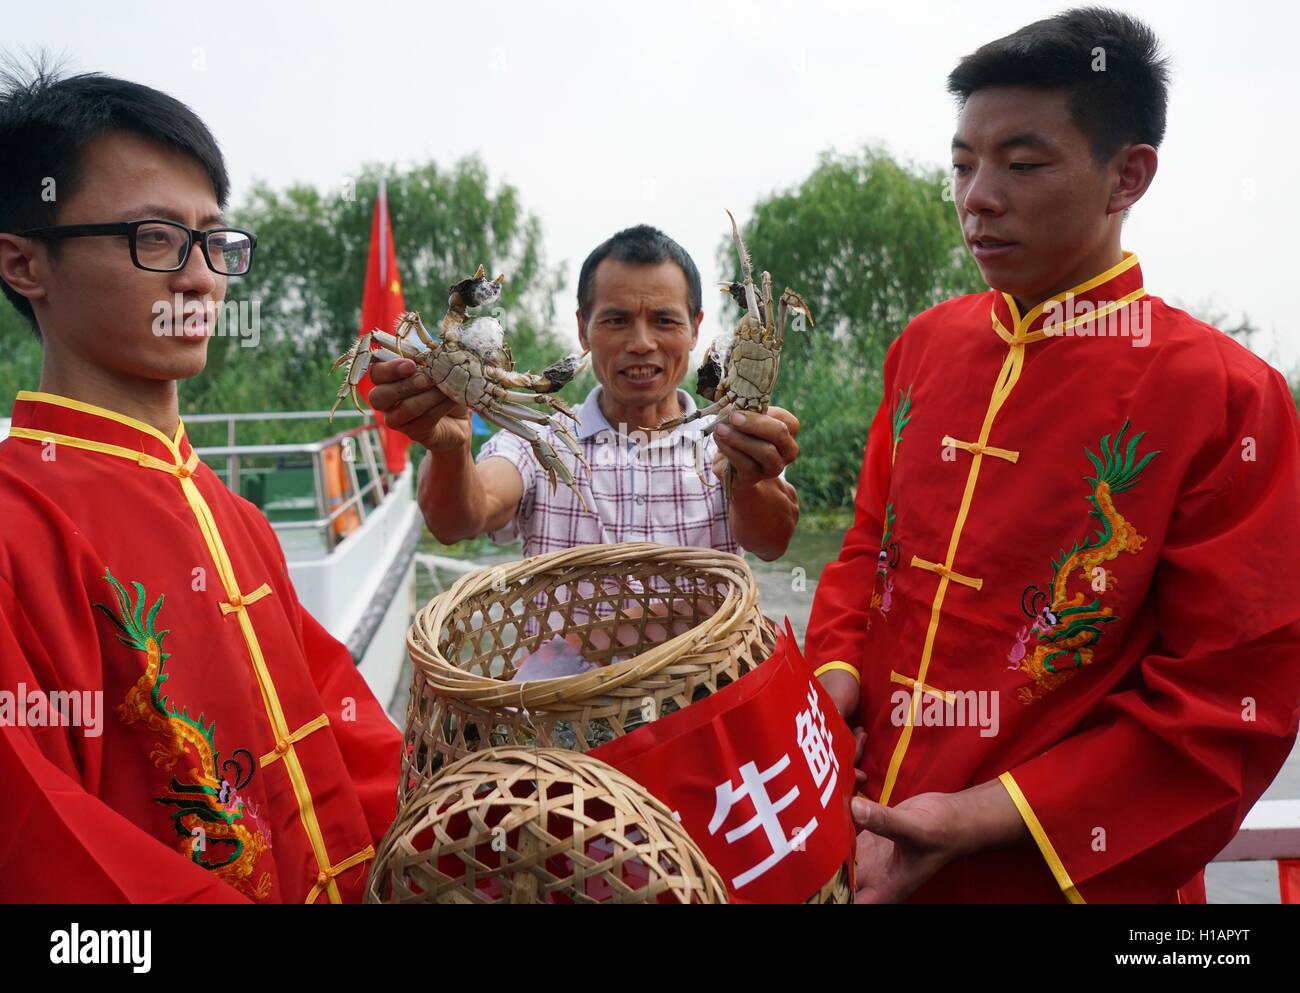 Suzhou, Province de Jiangsu en Chine. 29Th Sep 2016. Un pêcheur (C) démontre les crabes chinois sur le lac Yangcheng à Suzhou, Province de Jiangsu en Chine de l'Est, 23 septembre 2016. La saison de récolte 2016 pour le crabe chinois (Eriocheir sinensis) dans le lac Yangcheng, une importante région productrice a commencé le vendredi. Également connue sous le nom de crabe d'écluse, le crabe chinois sont favorisés par de nombreux amateurs de cuisine gastronomique. © Ji Chunpeng/Xinhua/Alamy Live News Banque D'Images